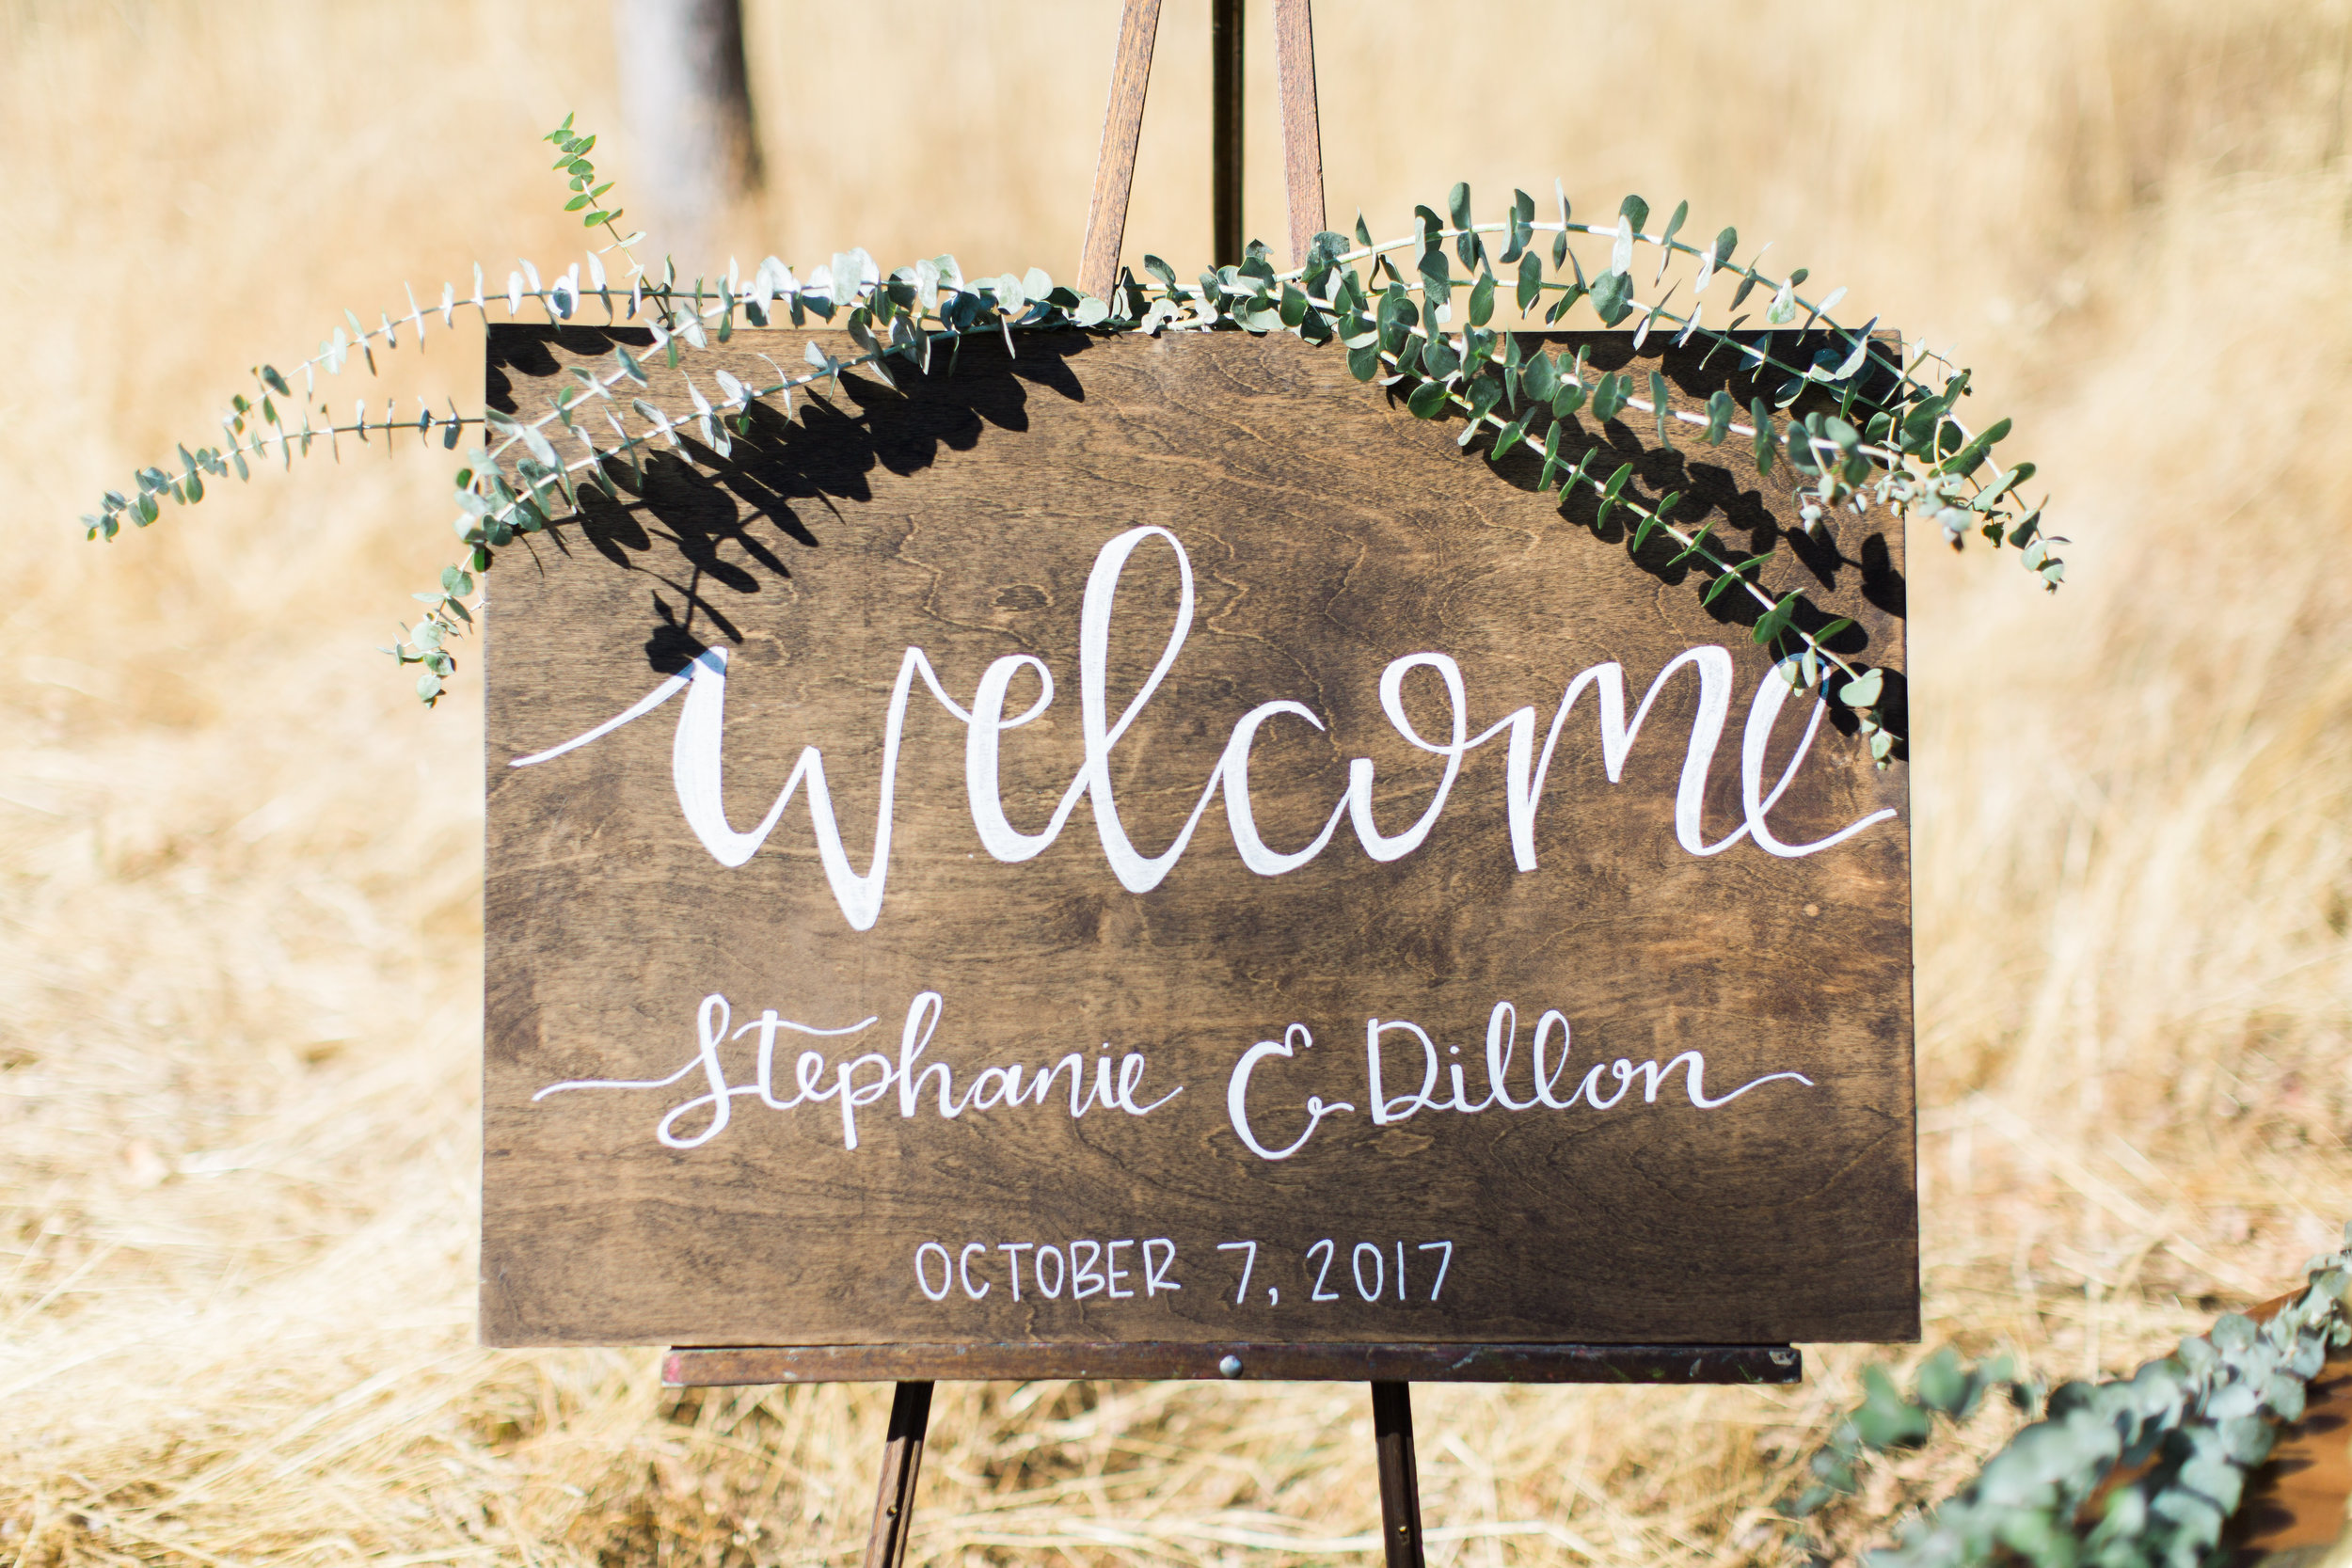 dillon+stephanie-wedding-52.jpg